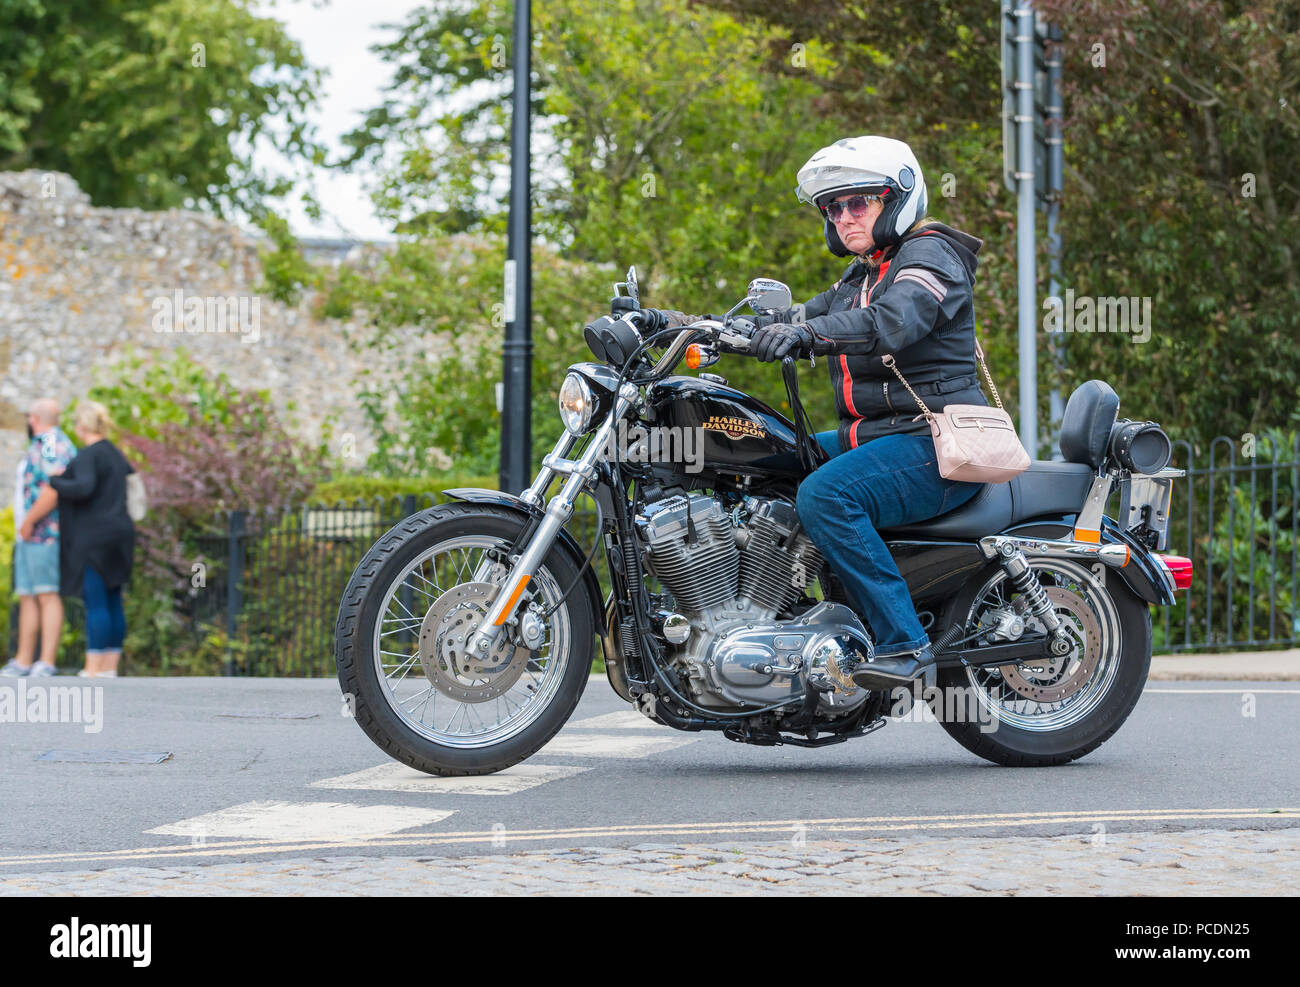 Femme à vélo Harley Davidson 883 Sportster moto avec sac à main sur son épaule au Royaume-Uni. Motocycliste féminine. Banque D'Images